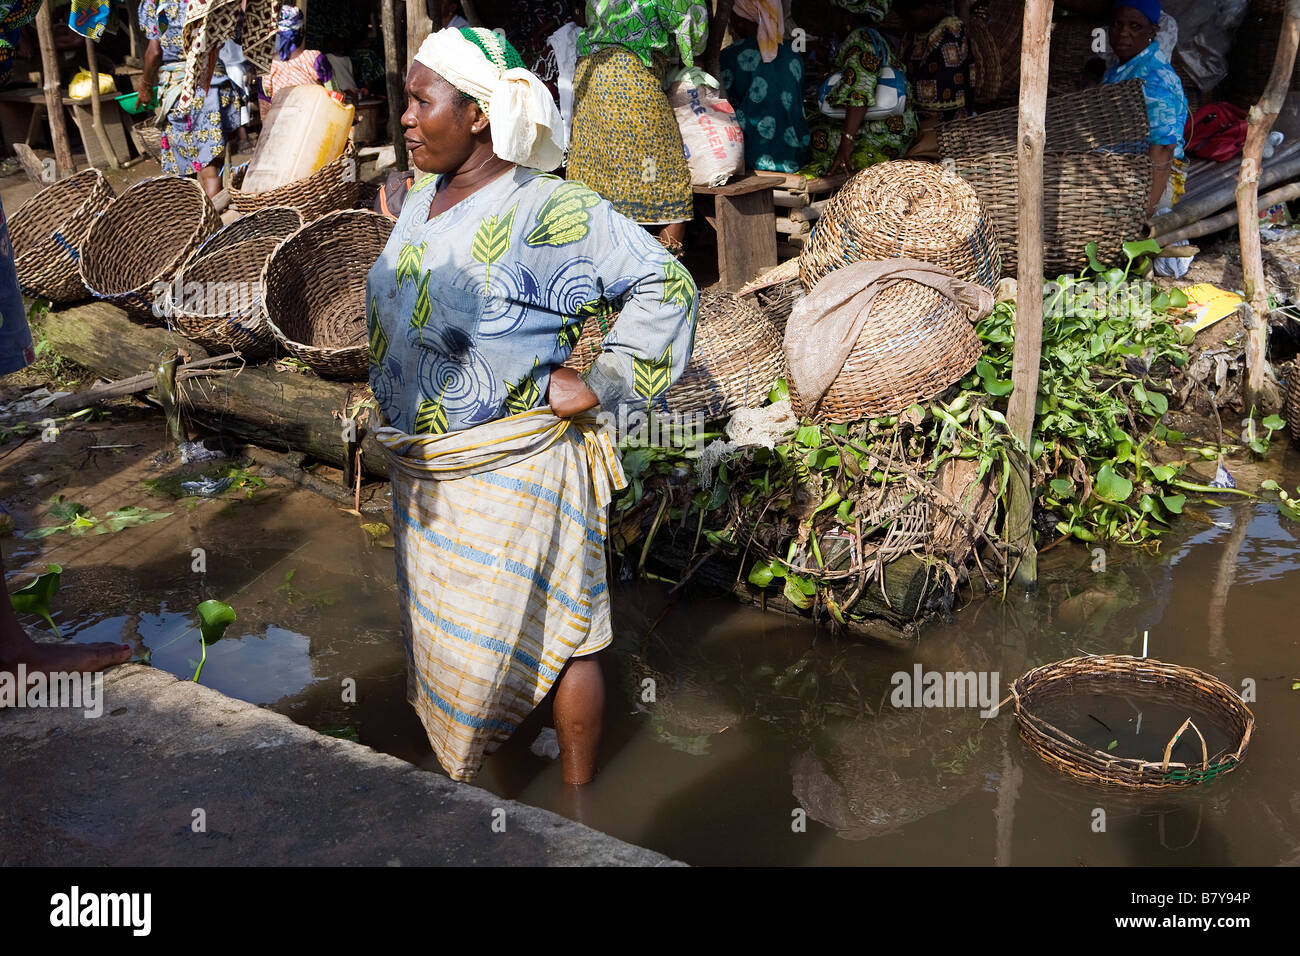 Femme de la région s'étend sur son dos tandis que debout dans la rivière pour attraper des poissons à un marché de poissons Banque D'Images